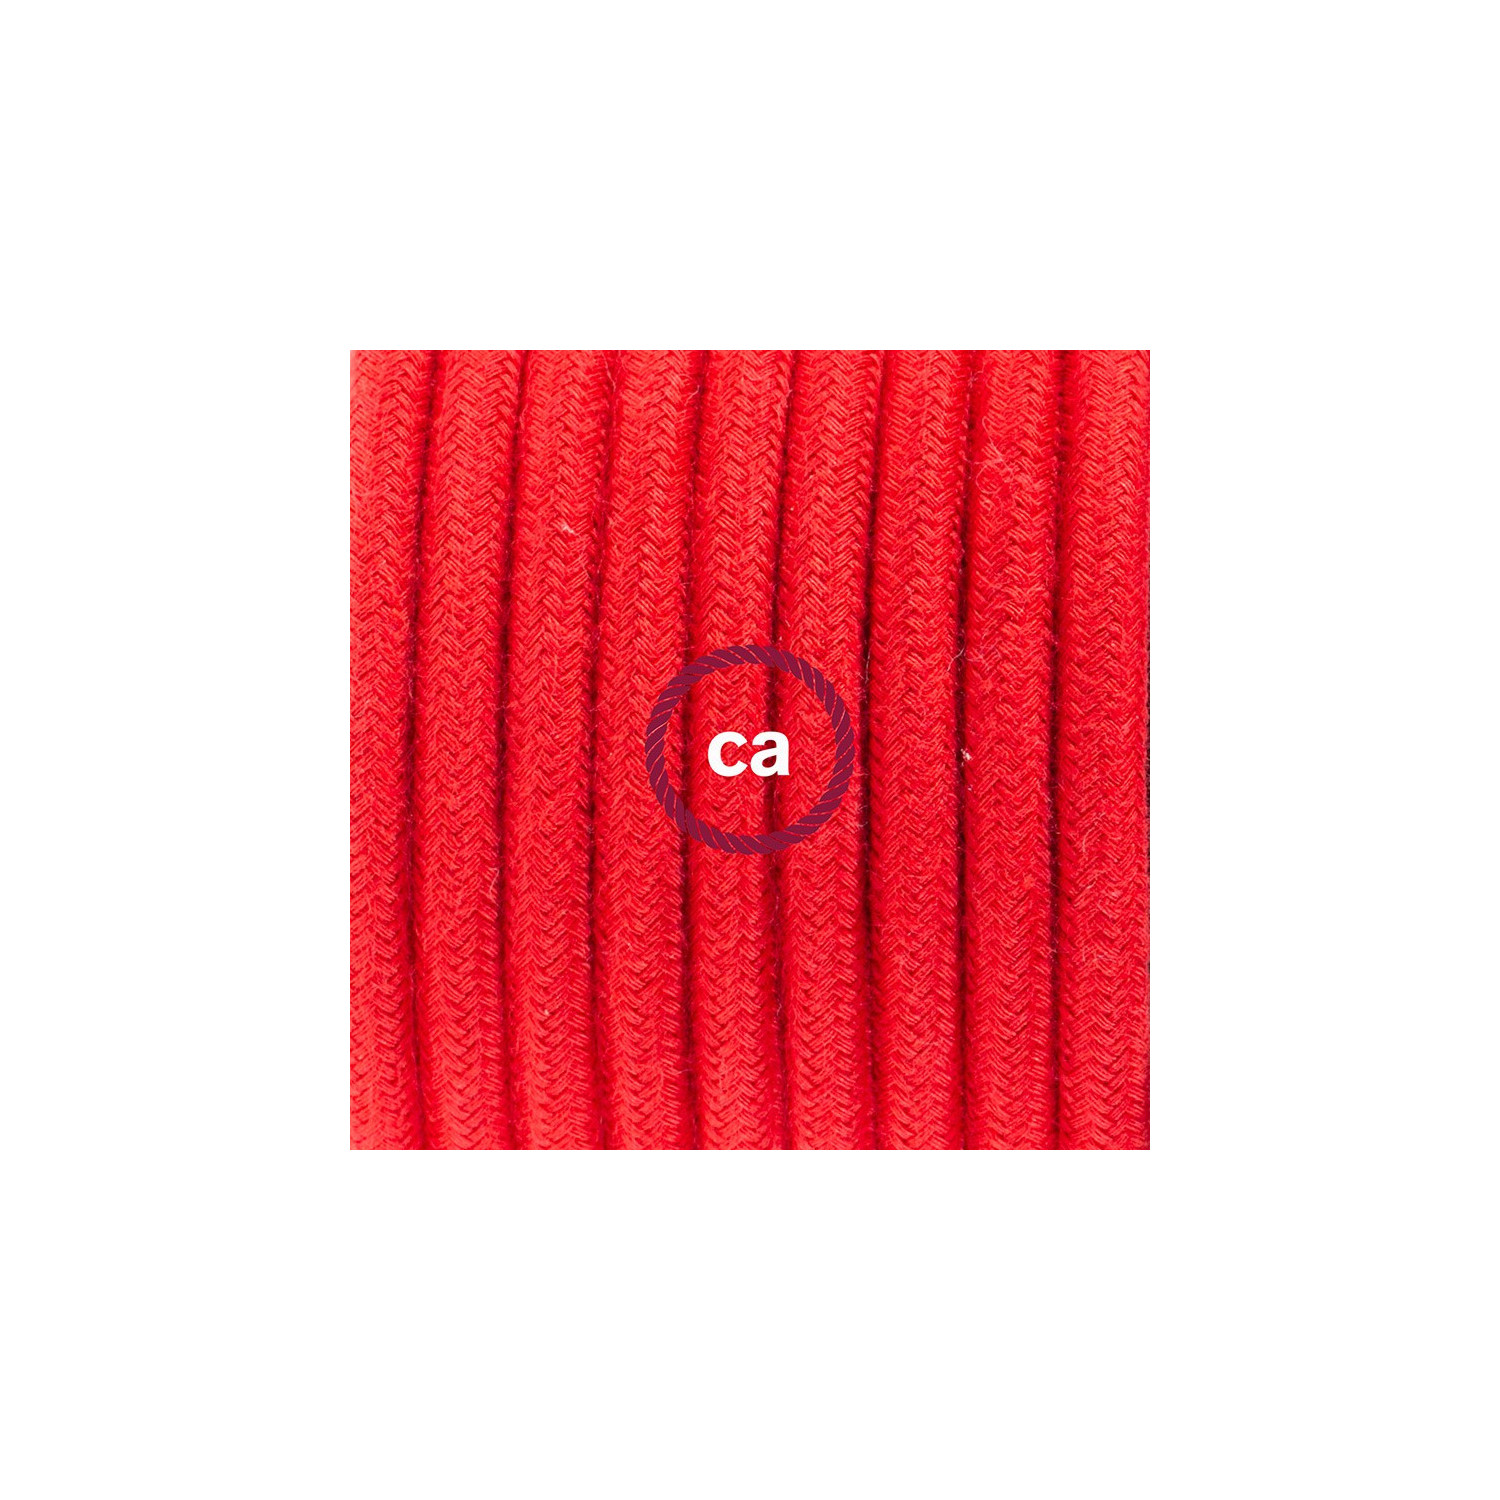 Cablaggio per lampada, cavo RC35 Cotone Rosso Fuoco 1,80 m. Scegli il colore dell'interuttore e della spina.